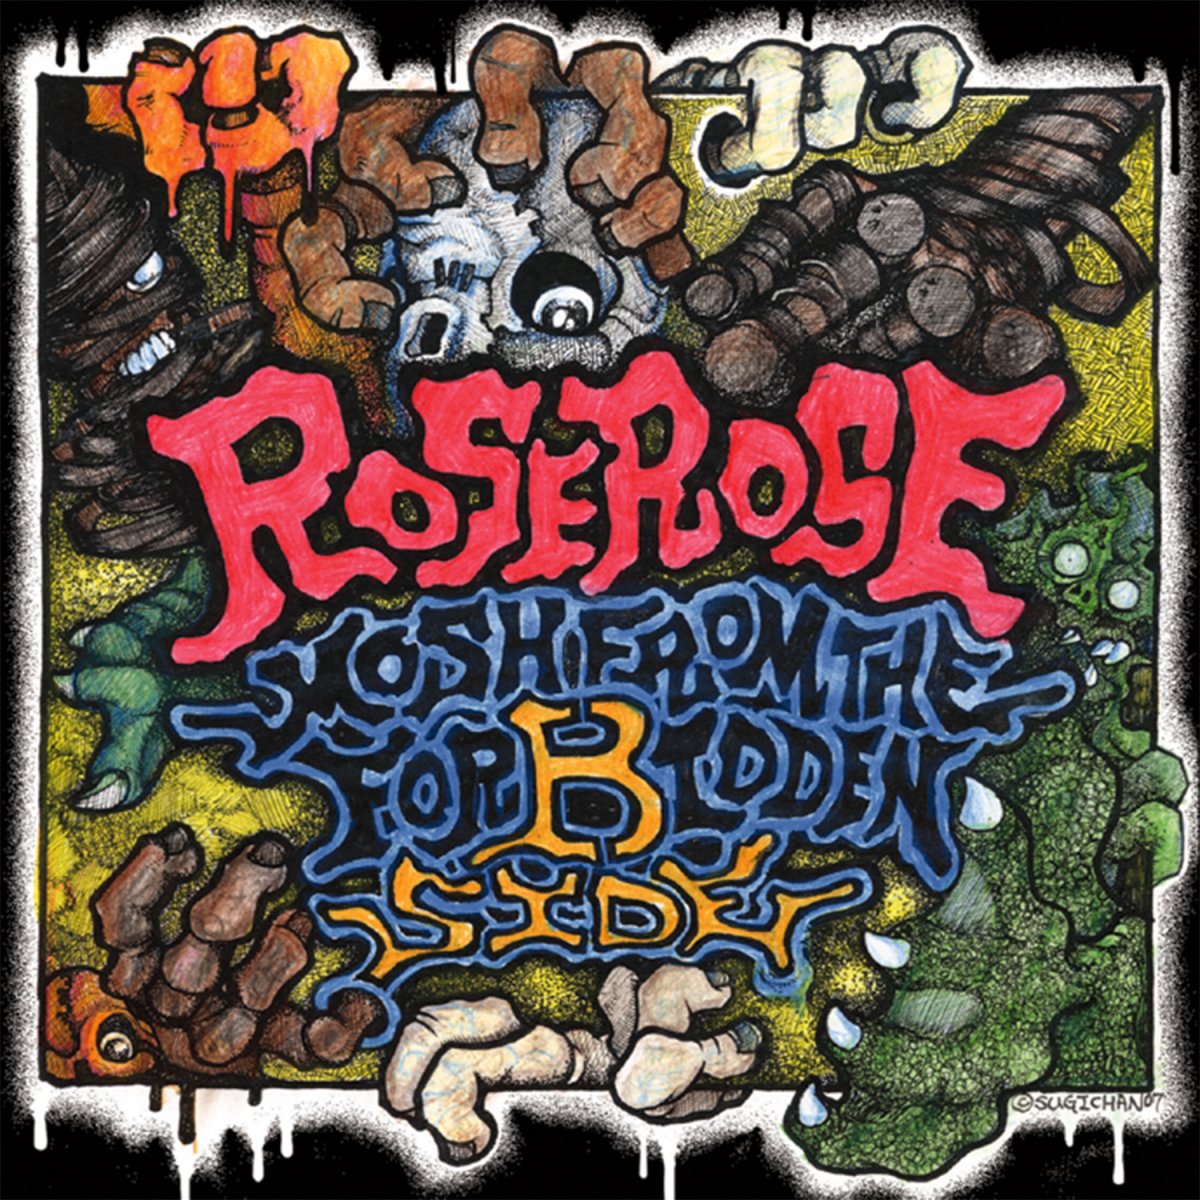 ROSEROSE  MOSH OF ASS レコード盤UK盤オリジナル